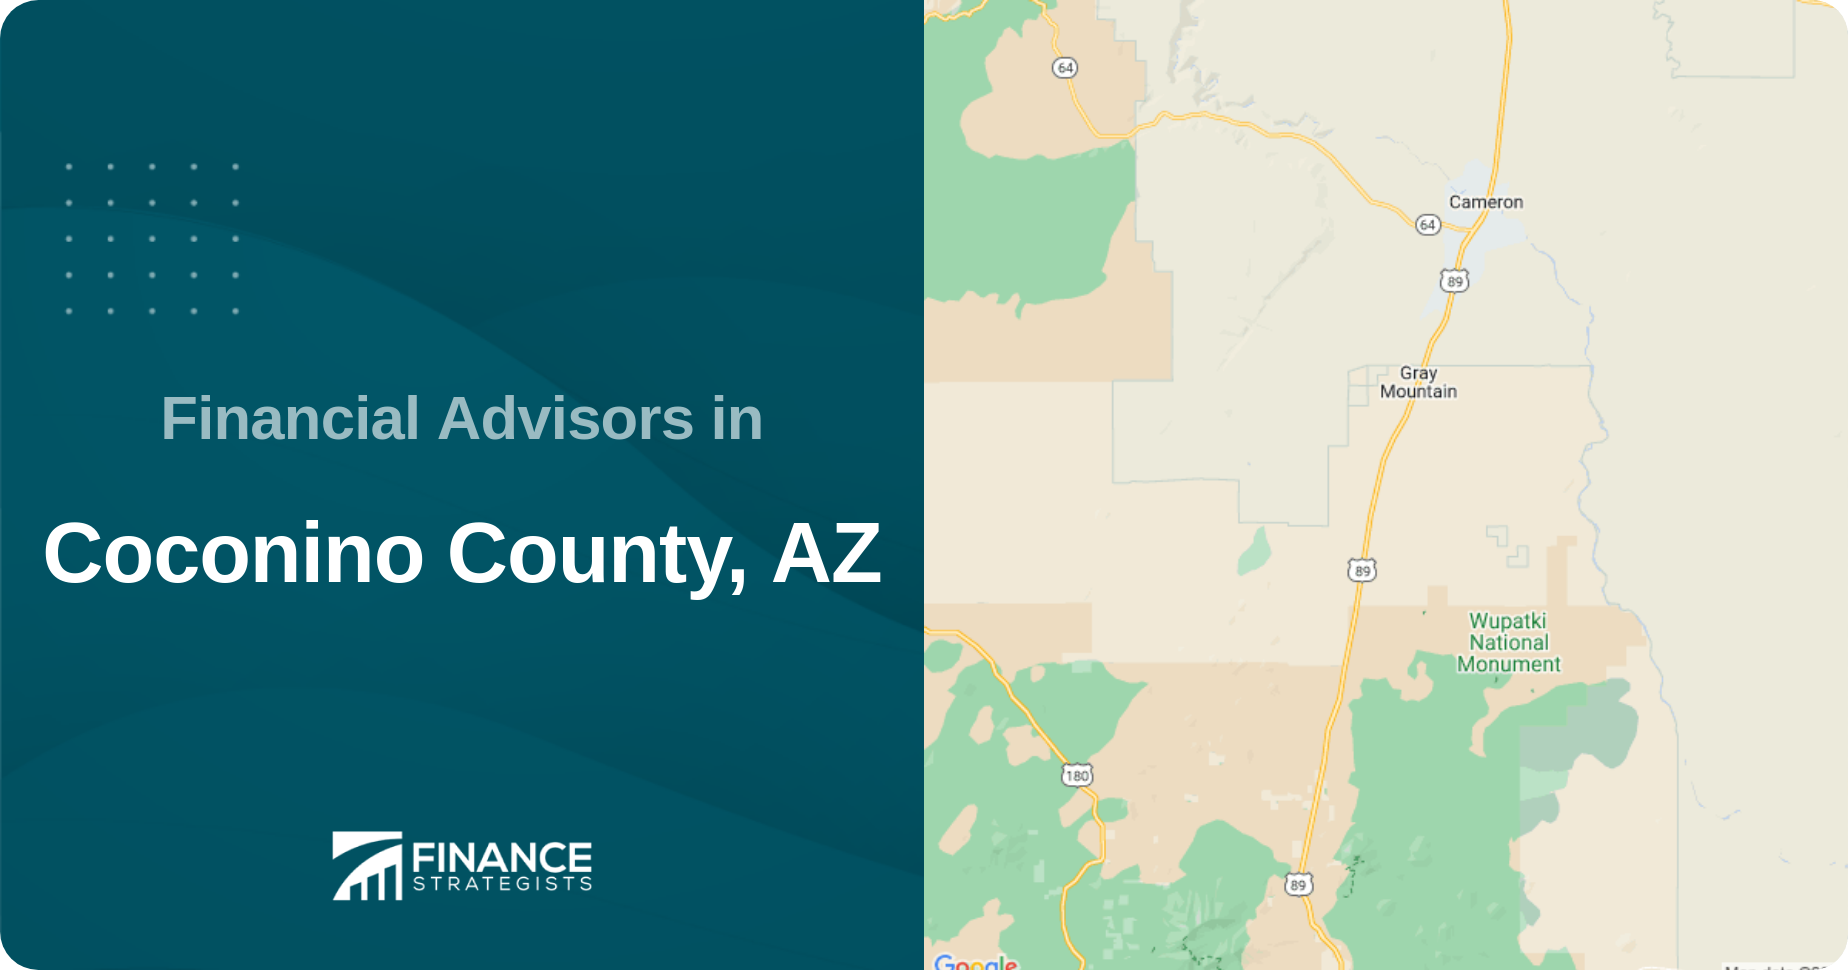 Financial Advisors in Coconino County, AZ